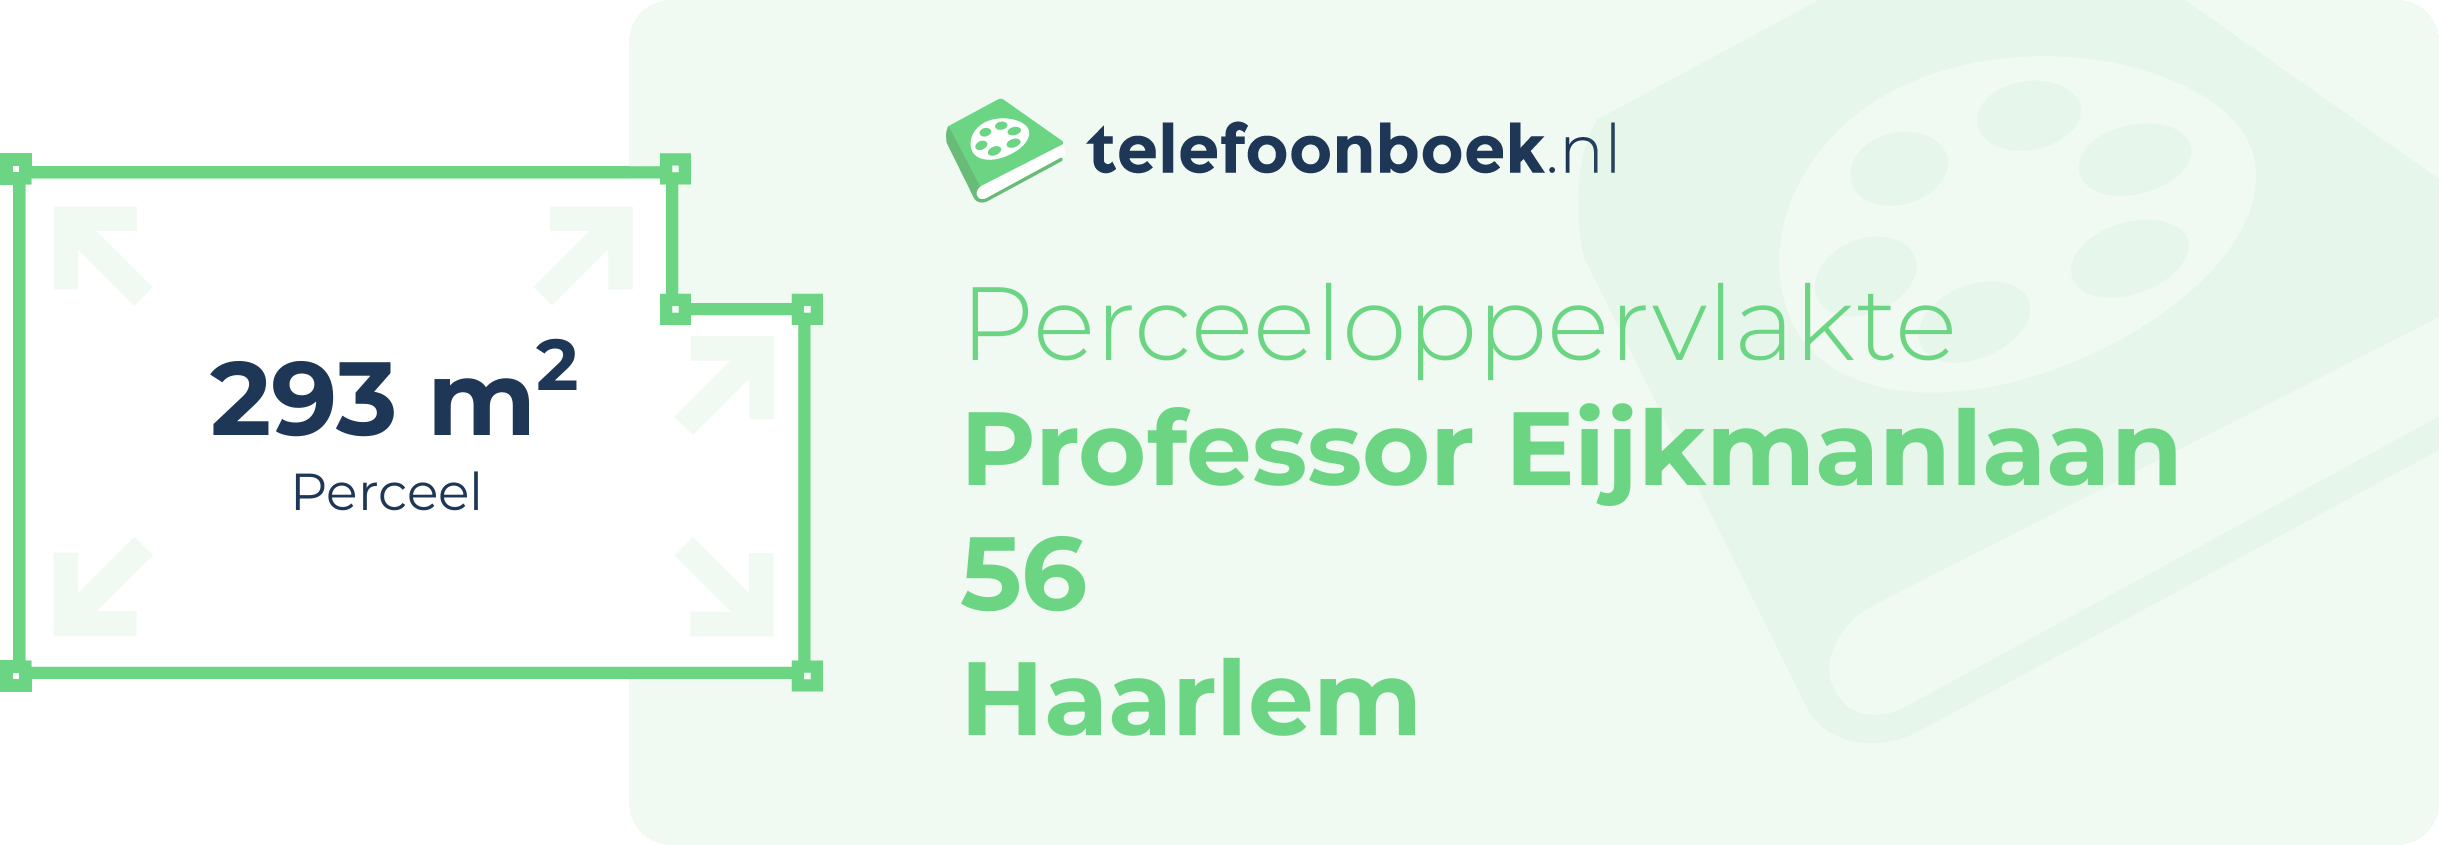 Perceeloppervlakte Professor Eijkmanlaan 56 Haarlem